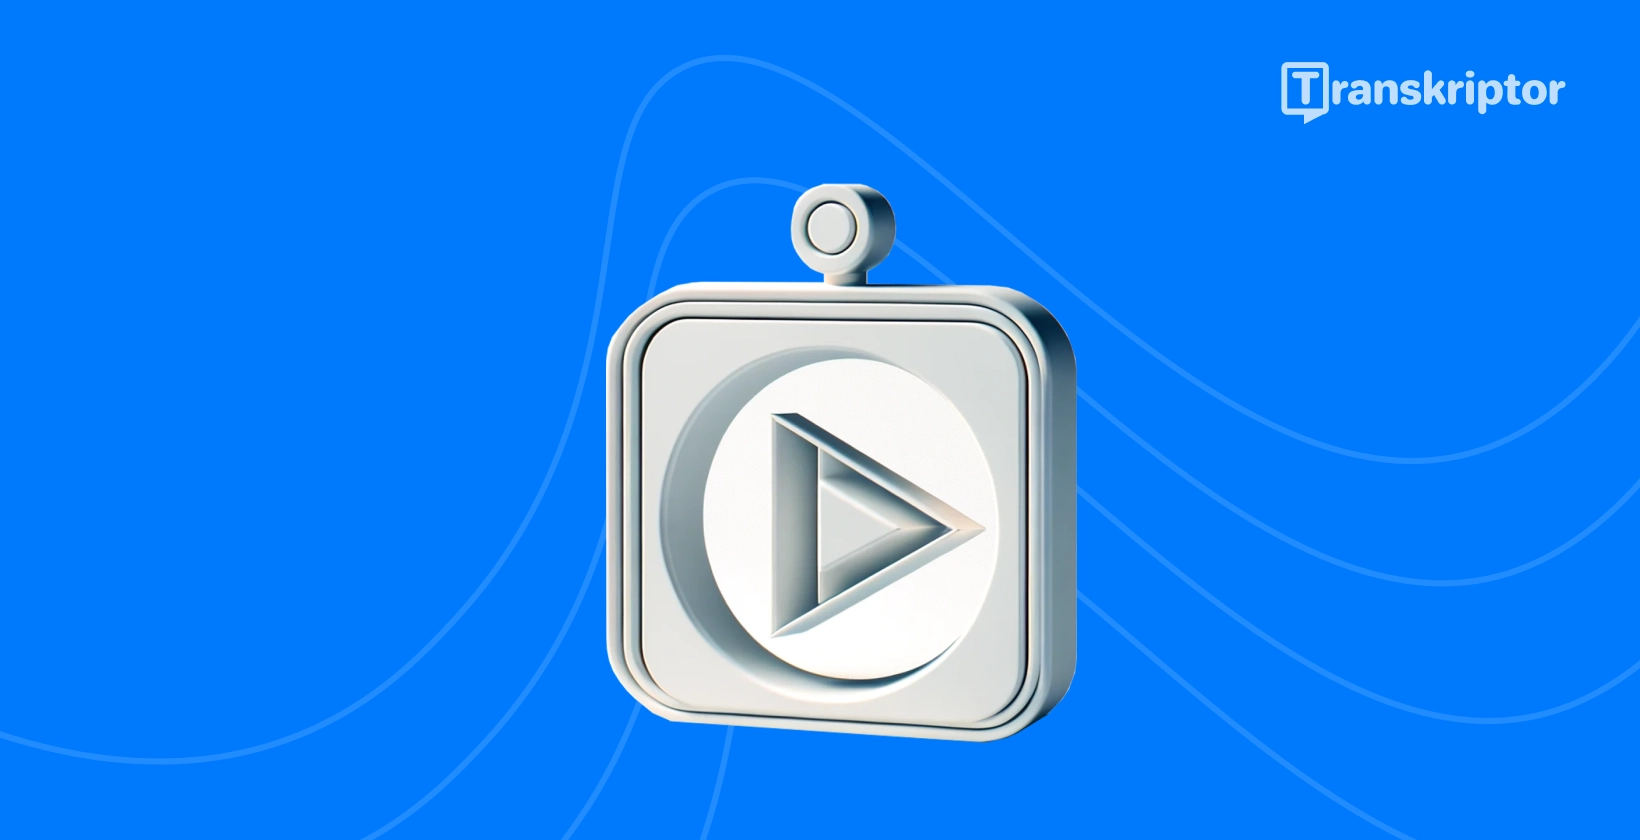 YouTube grafika průvodce přepisem s ikonou tlačítka přehrávání, která představuje videoobsah.